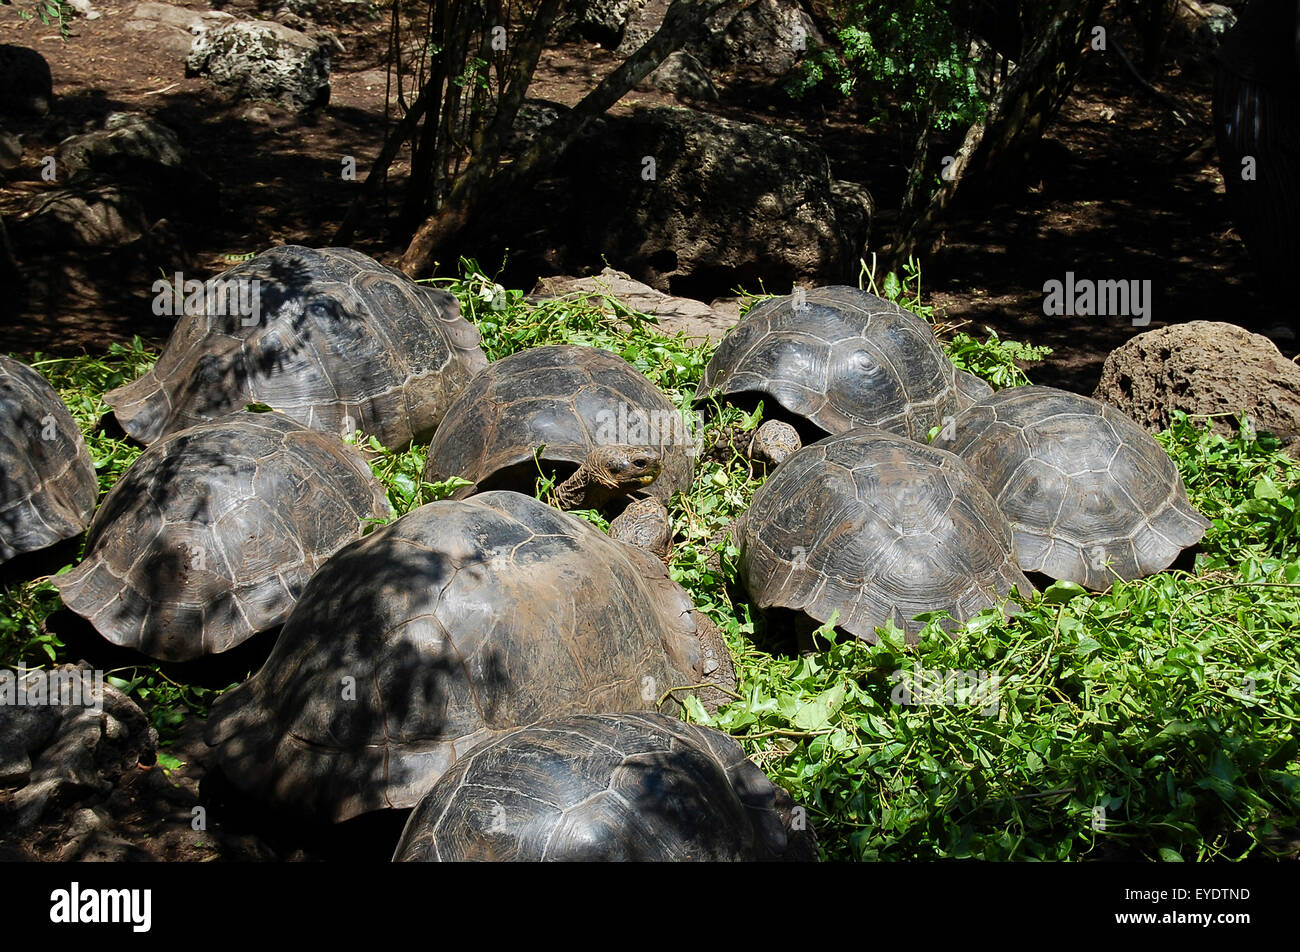 Les tortues géantes des Galapagos - Equateur - Banque D'Images